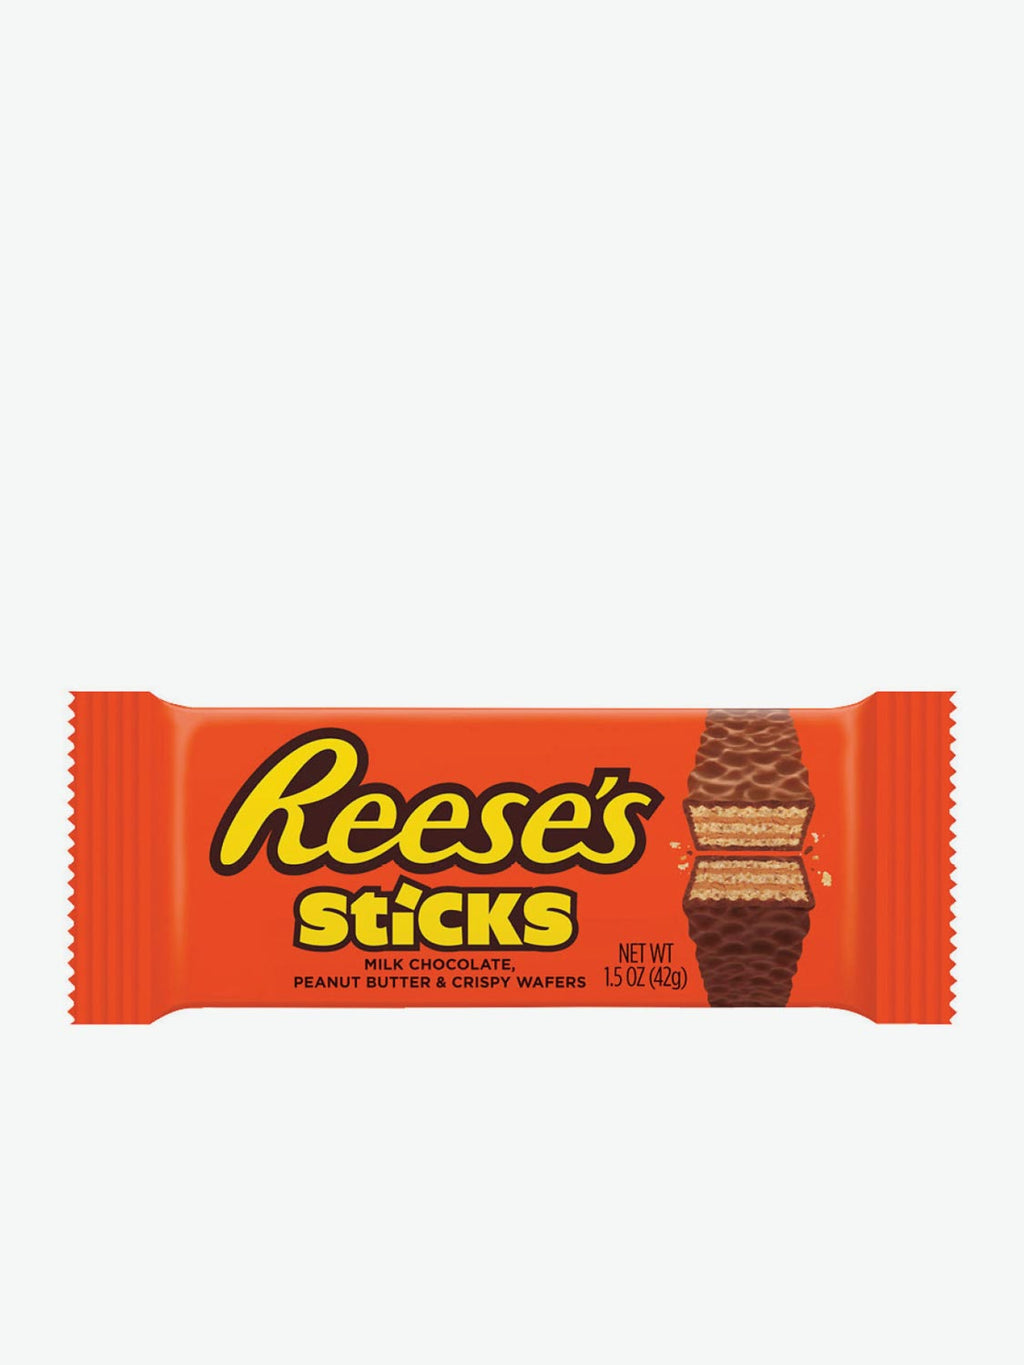 Reese's Peanut Butter Sticks | A